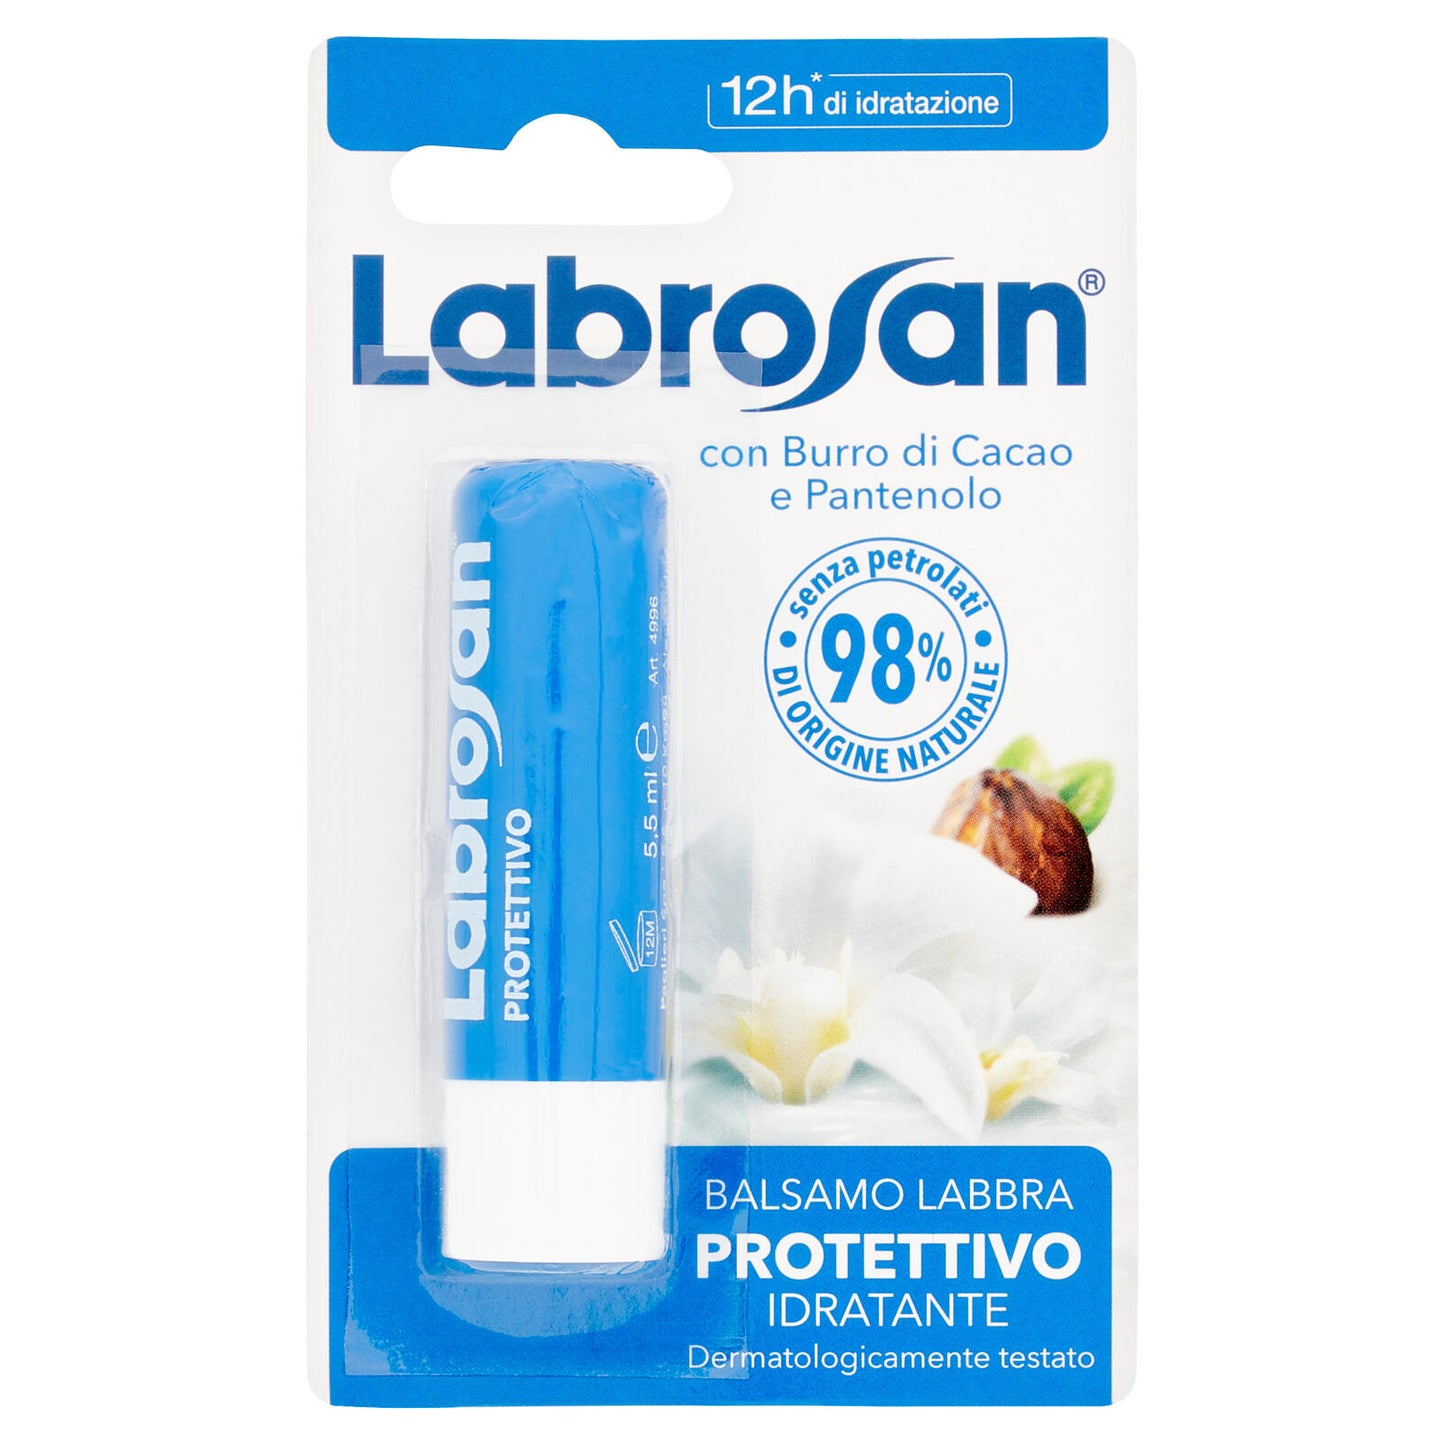 Labrosan Balsamo Labbra Protettivo Idratante 5.5 ml